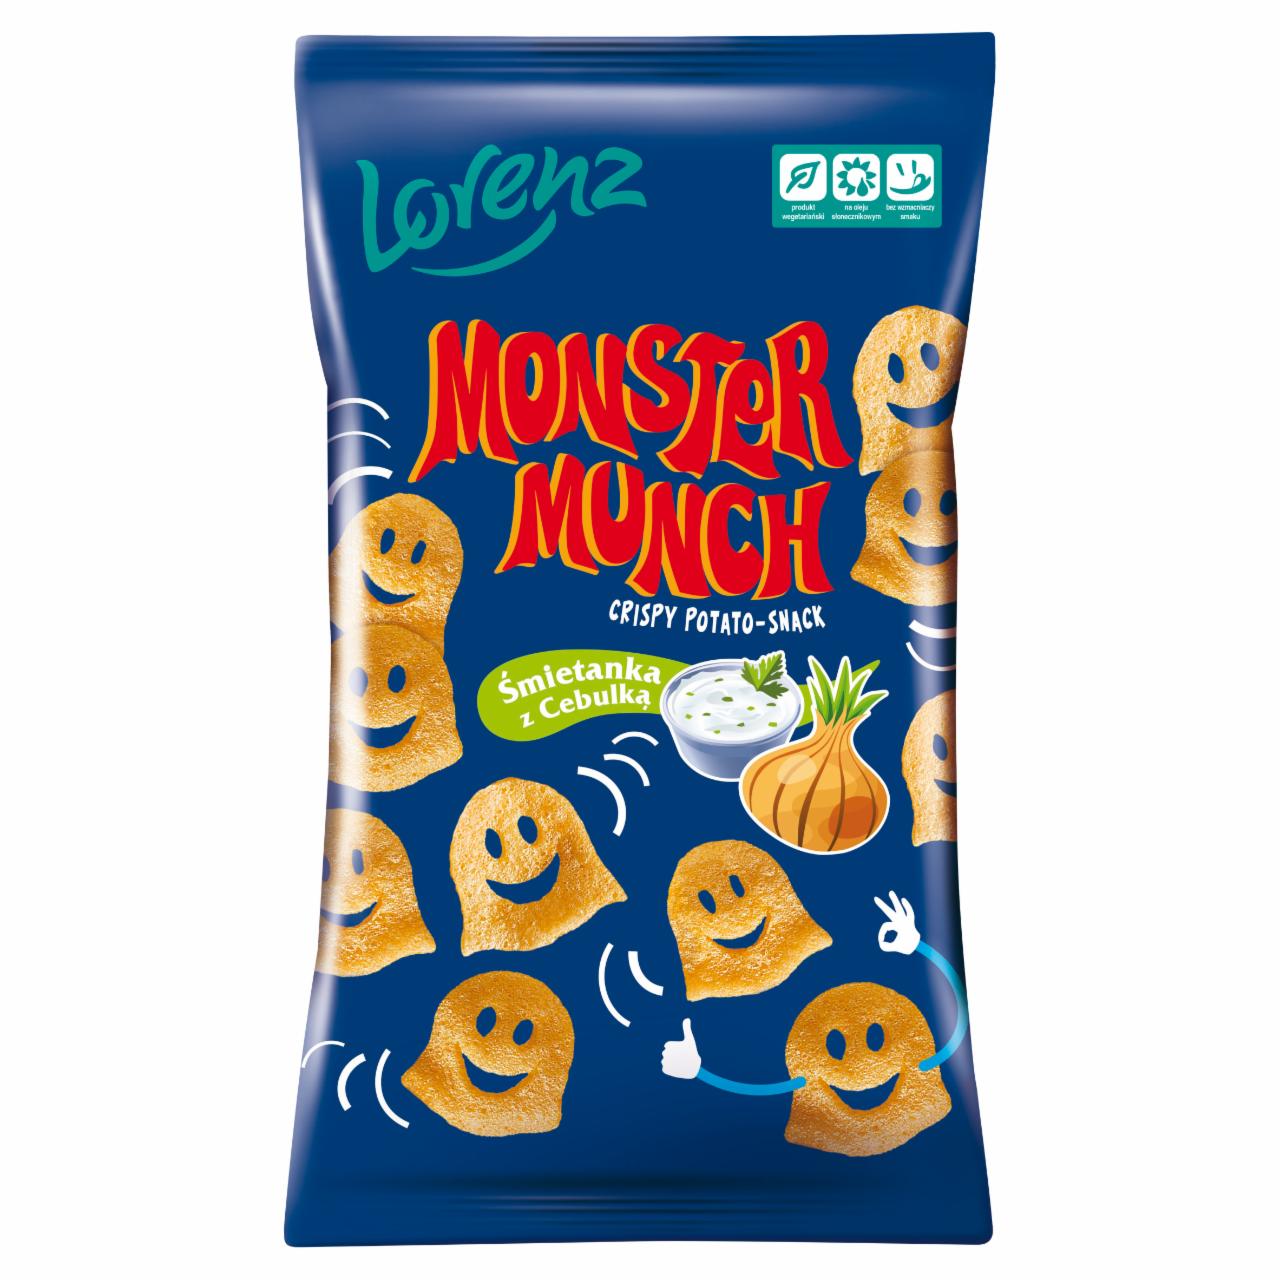 Zdjęcia - Monster Munch Chrupki ziemniaczane śmietanka z cebulką 100 g